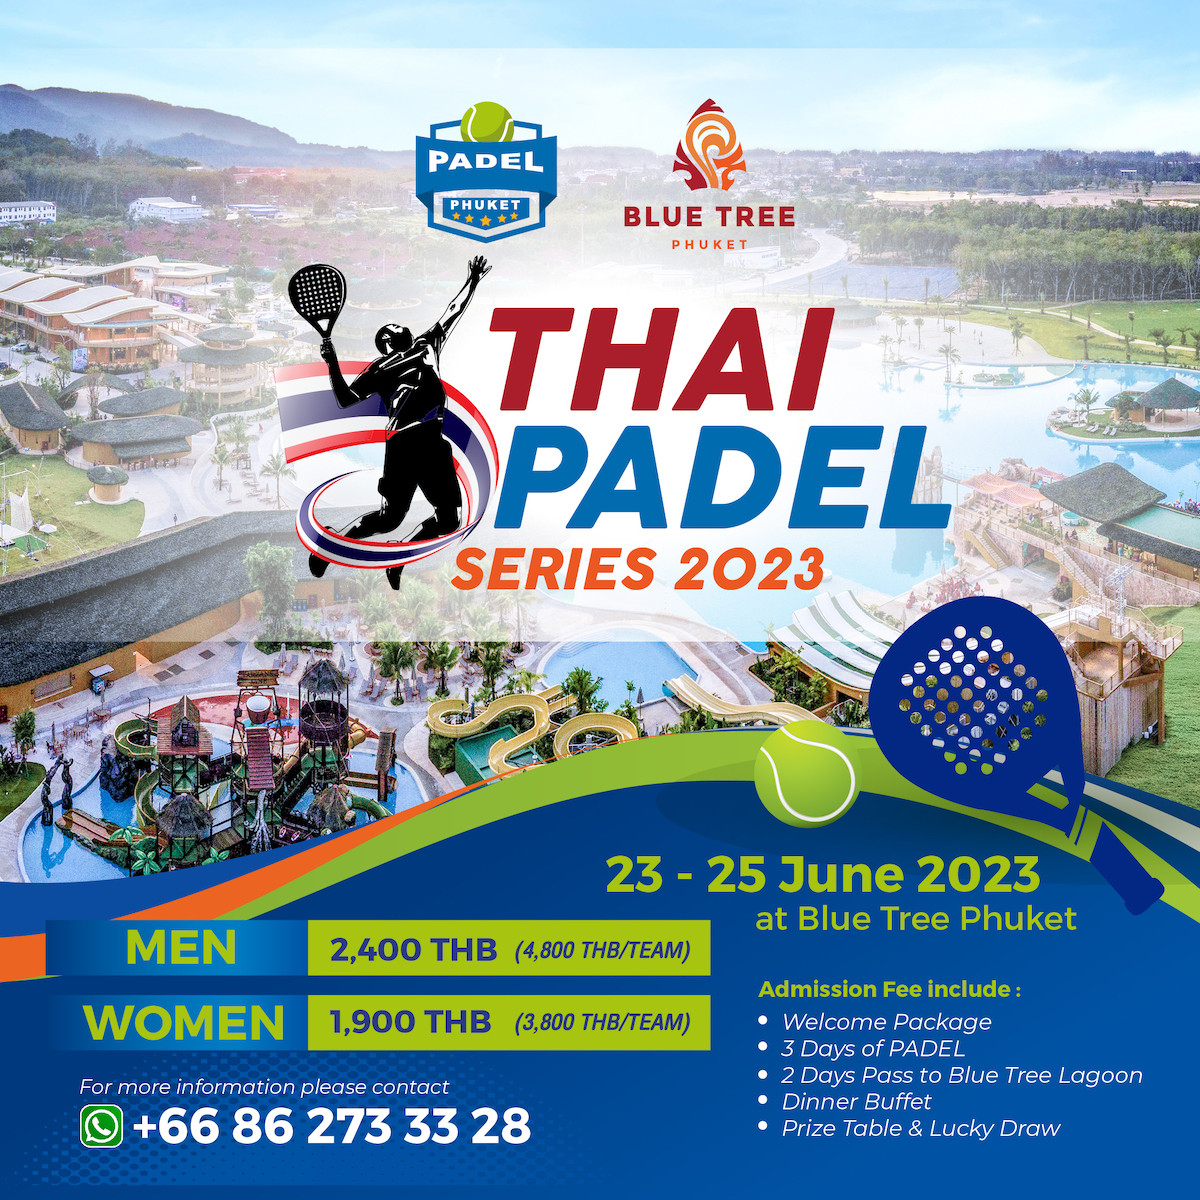 “บลูทรี ภูเก็ต” เตรียมเปิดสนามจัดการแข่งขัน “Thai Padel Series 2023” กีฬาสุดฮิตจากยุโรป   ครั้งแรก! ในภูเก็ต 23-25 มิ.ย.นี้ พร้อมเปิดรับสมัครแล้ววันนี้!! 